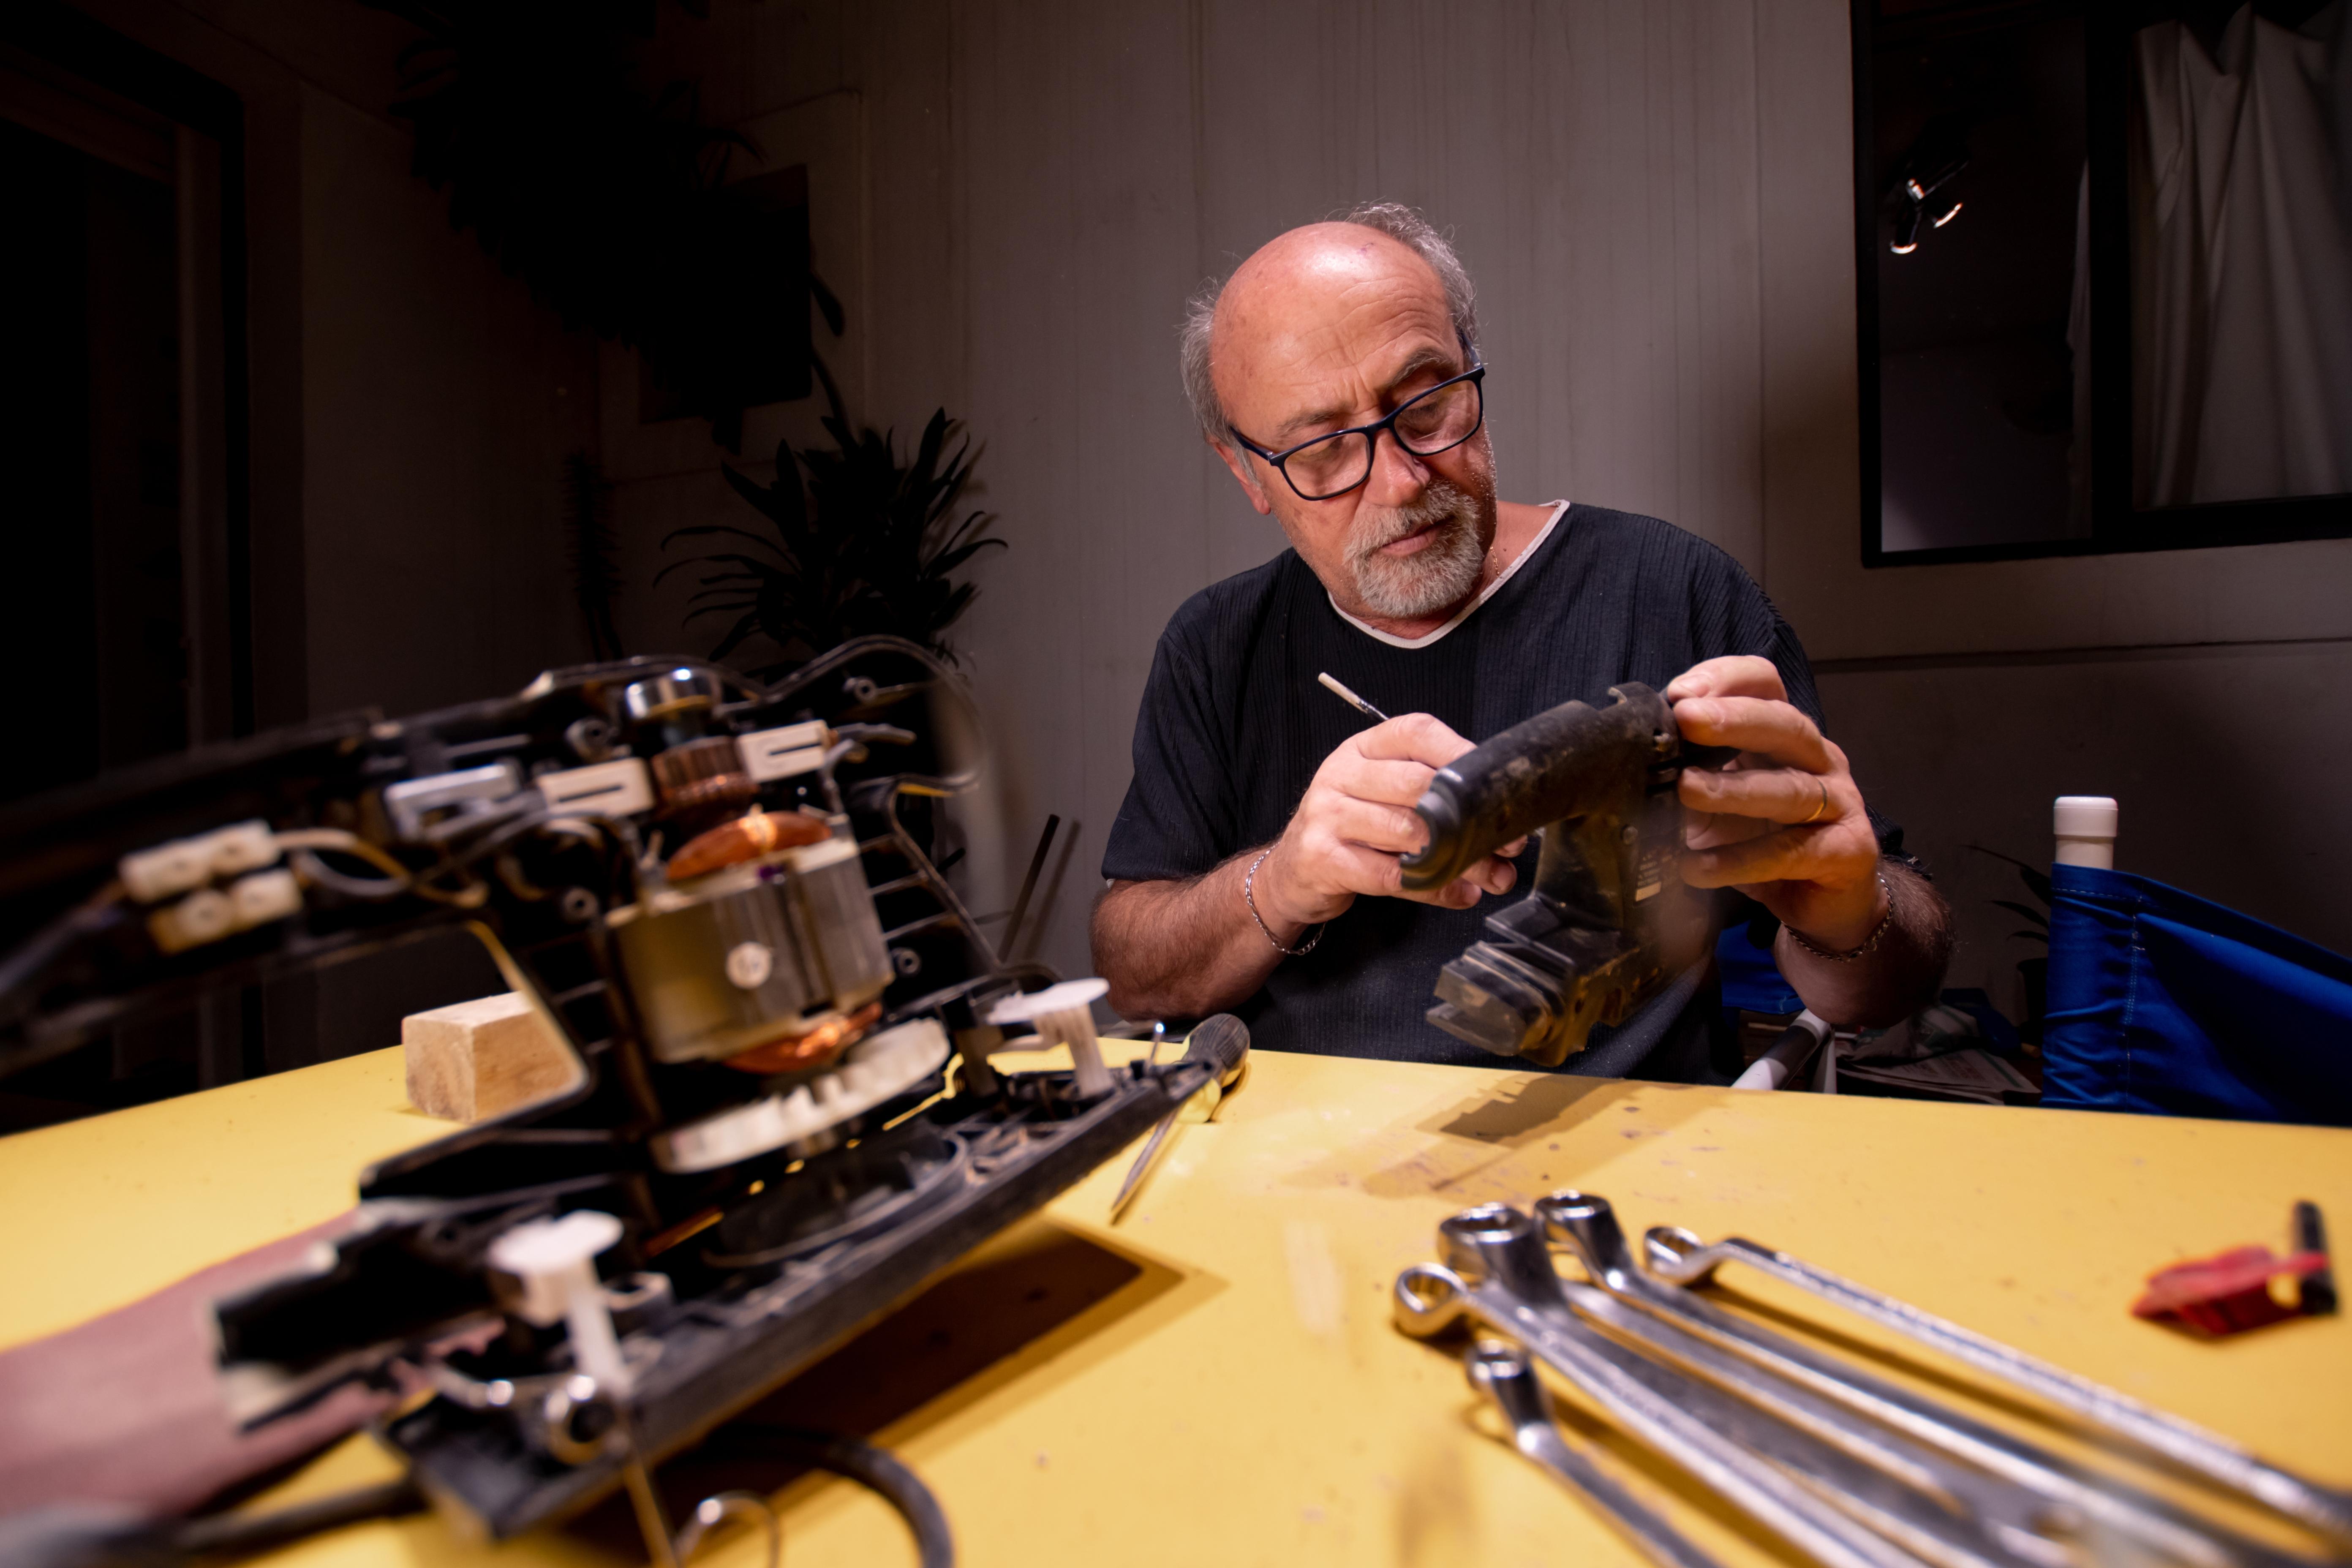 Older man cleaning craft repair items in his workshop